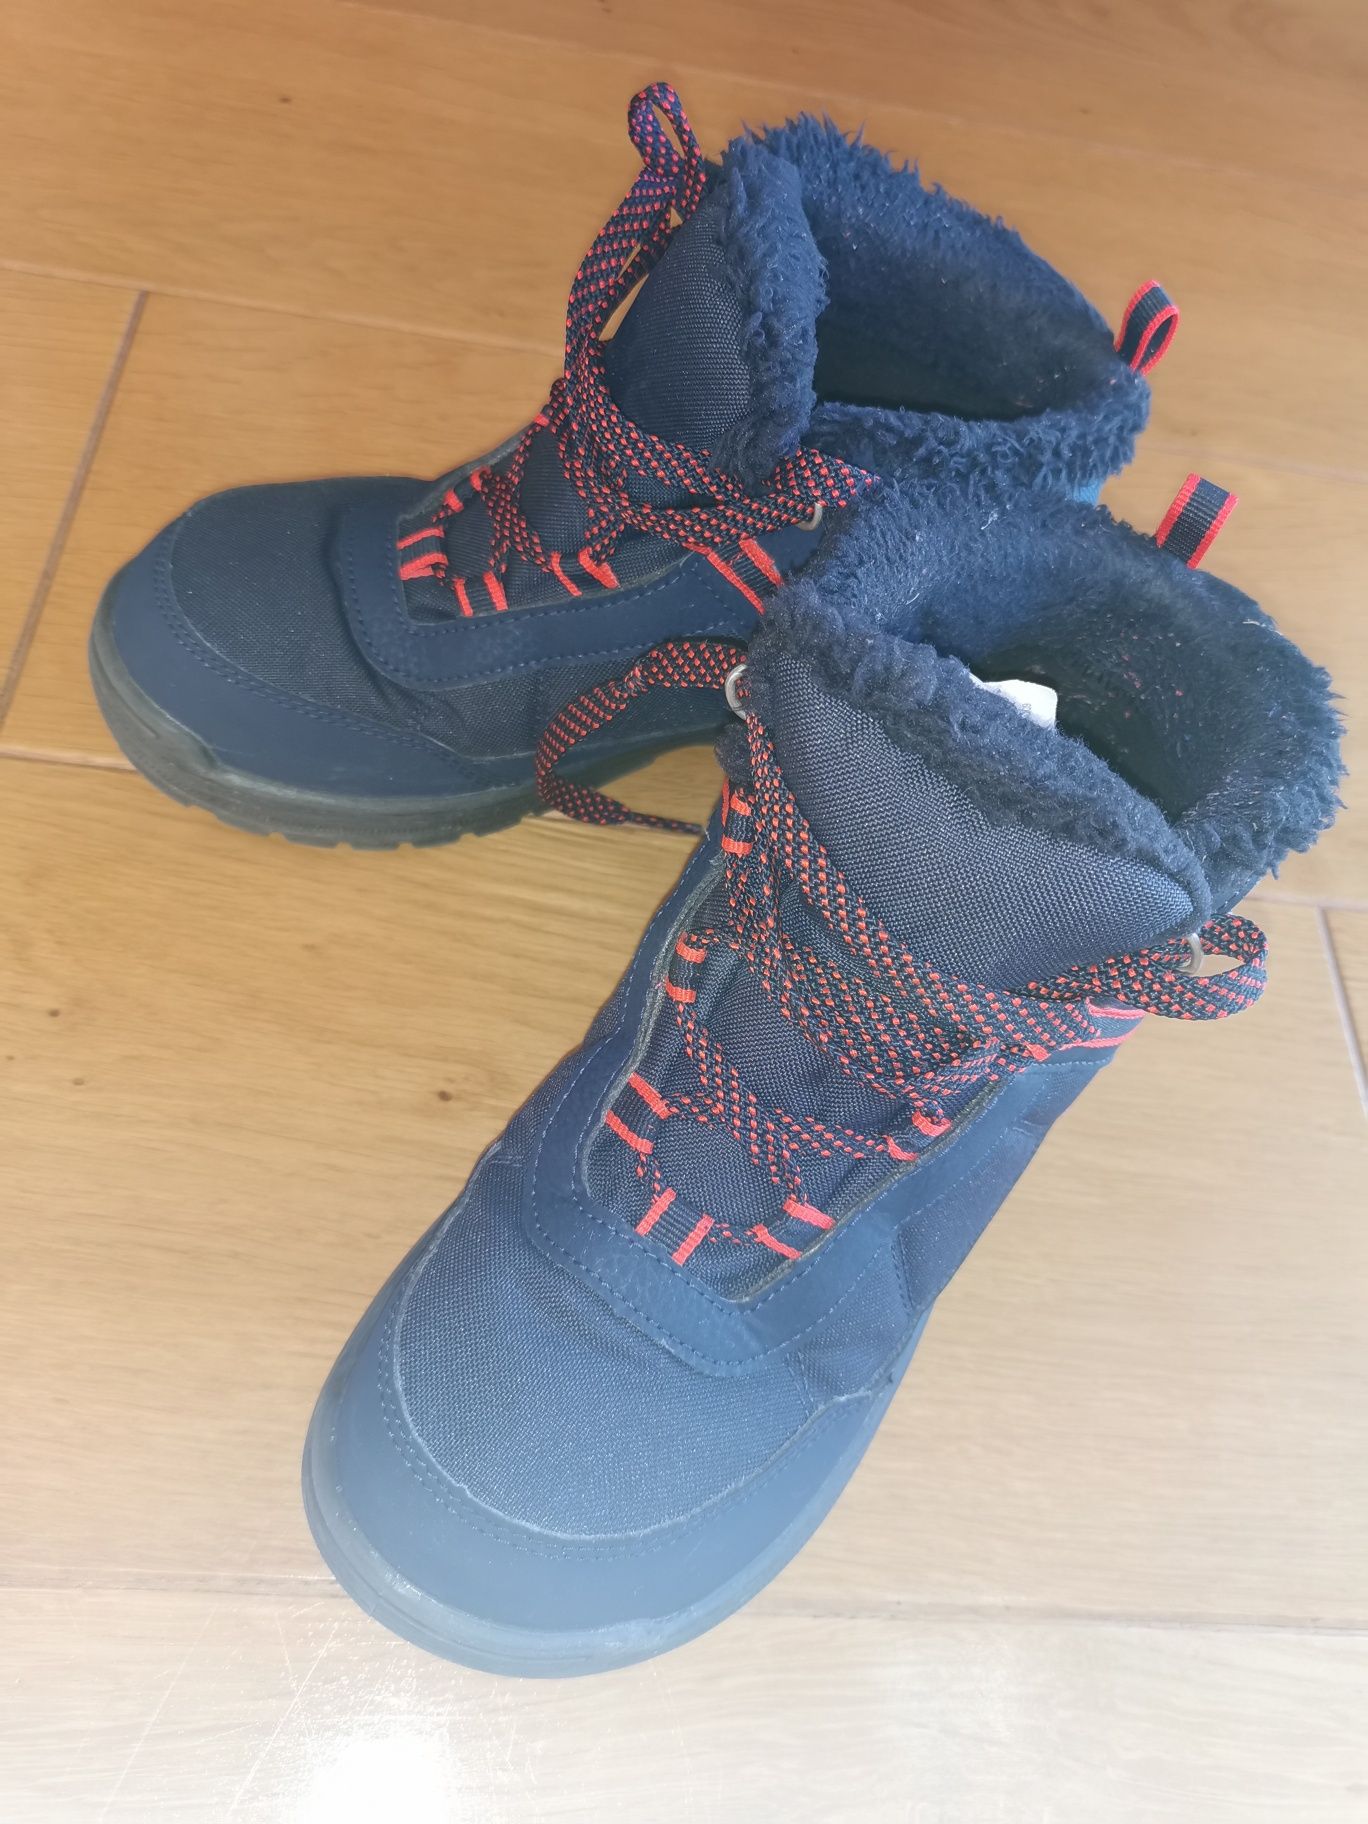 Buty turystyczne dla dzieci. Quechua SH100 rozmiar 35